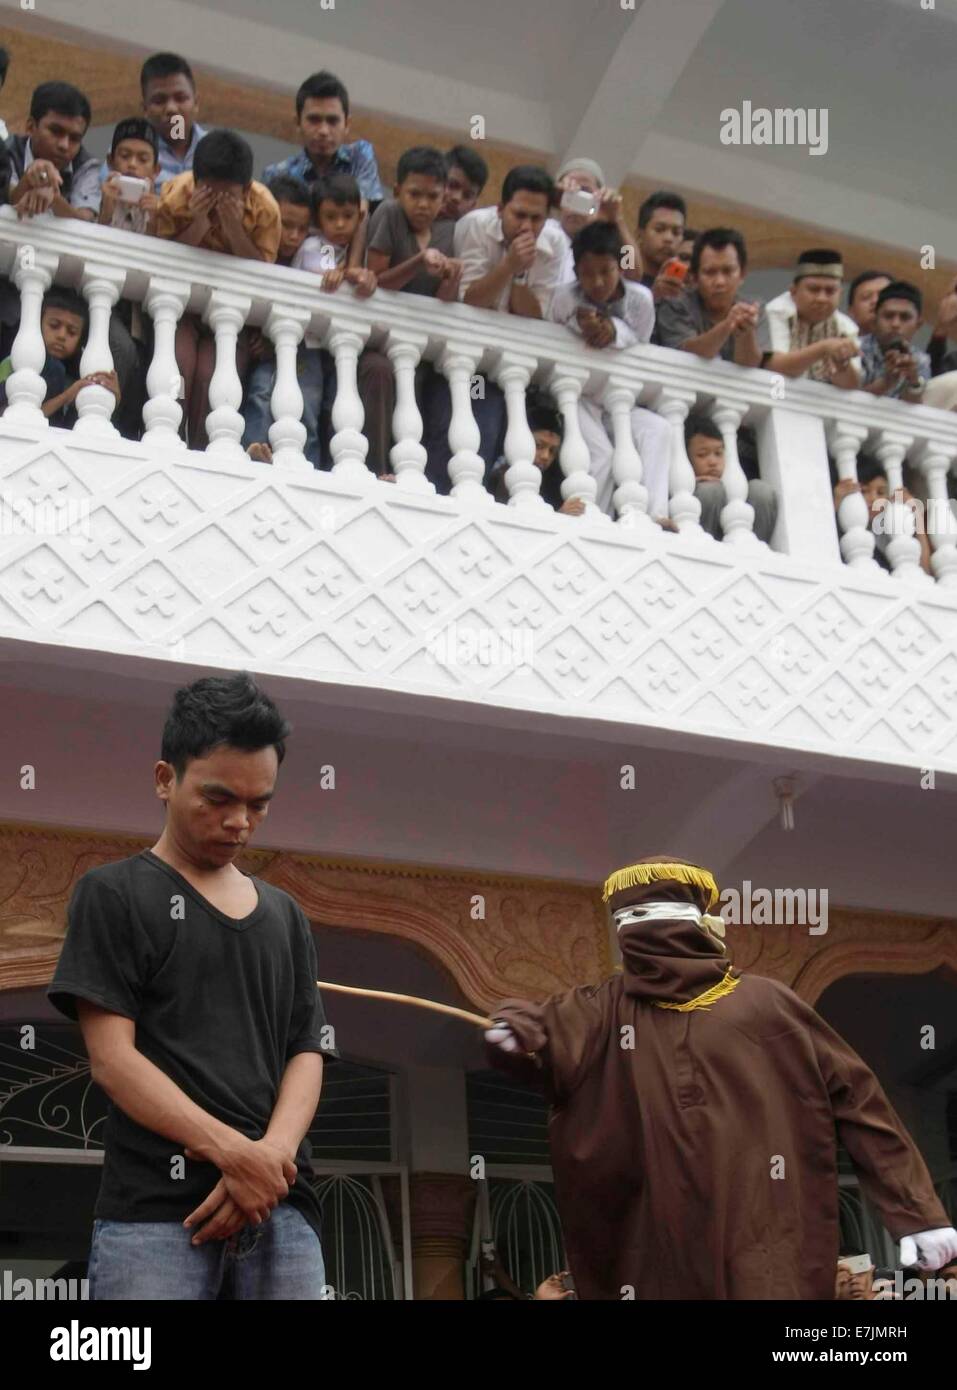 Aceh, Indonesia. 19 Settembre, 2014. Una legge della Sharia fruste ufficiale un uomo condannato per il gioco d'azzardo con una canna di rattan durante un pubblico originari nella provincia di Aceh, Indonesia, sul Sett. 19, 2014. L'amministrazione provinciale di Aceh, nel nord dell'isola indonesiana di Sumatra, ha approvato una legge chiamata 'Qanun Jinayat' implementata una versione della sharia islamica dal 2001 Credit: Xinhua/Alamy Live News Foto Stock